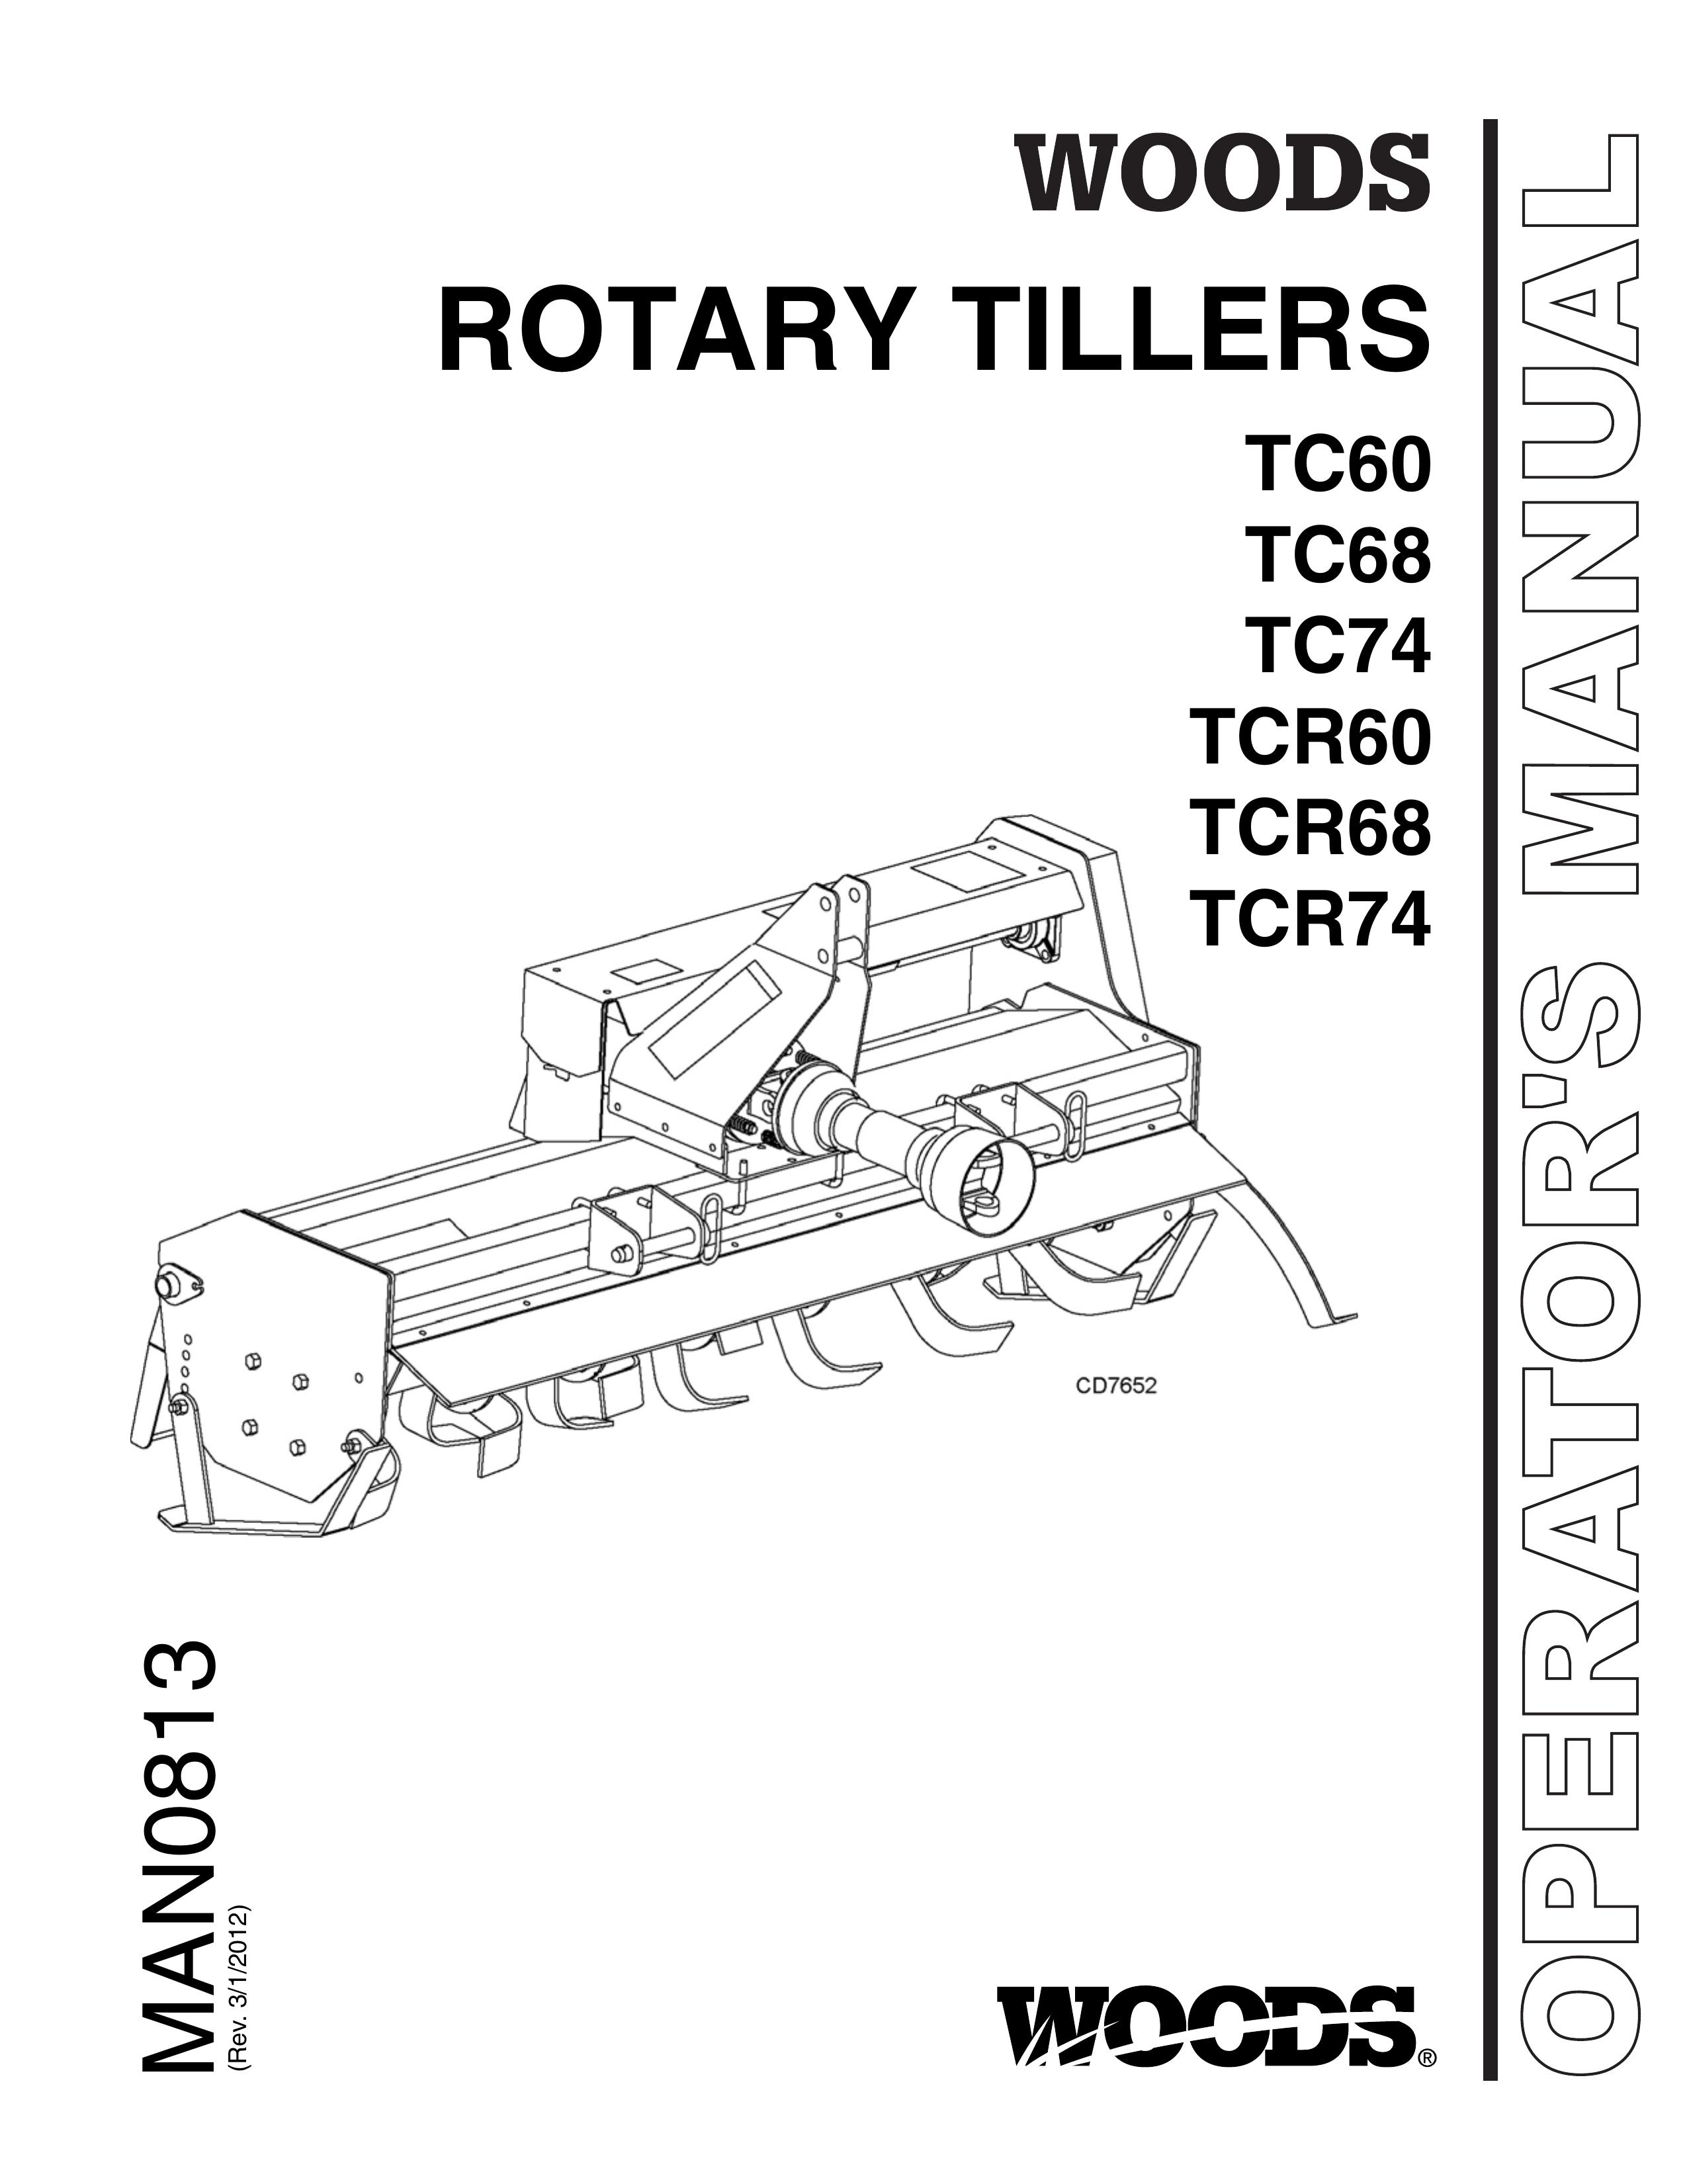 Woods Equipment TCR74 Tiller User Manual